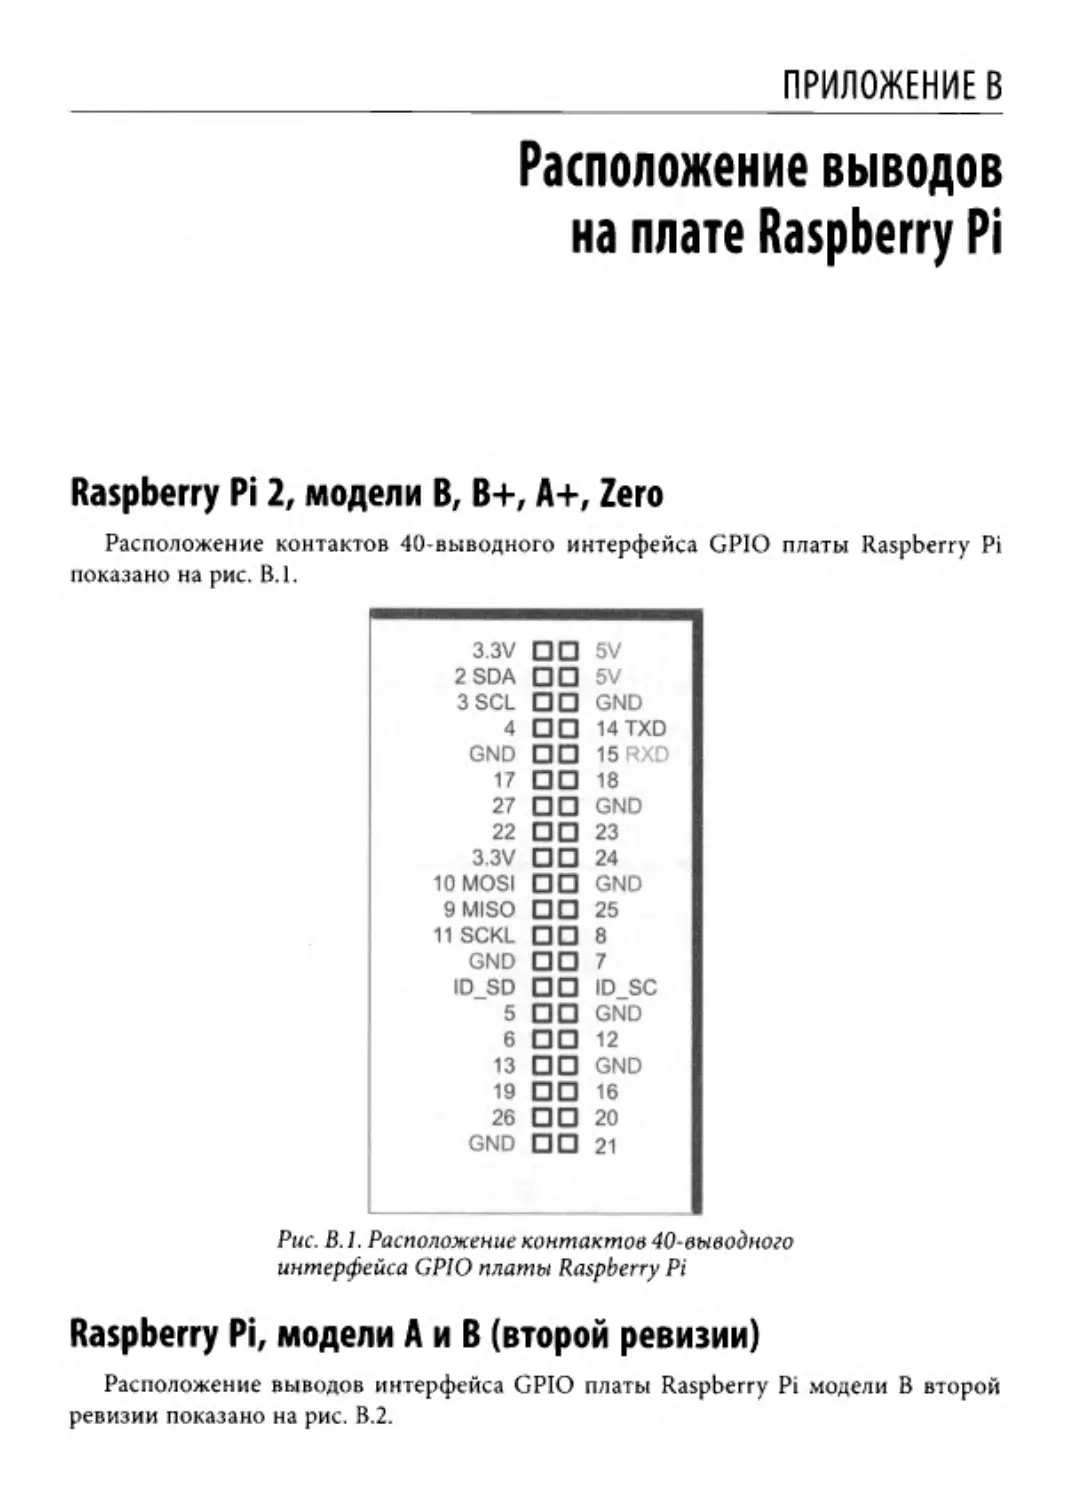 ﻿Приложение В. Расположение выводов на плате Raspberry P
﻿Raspberry Pi, модели А и B øвторой ревизии